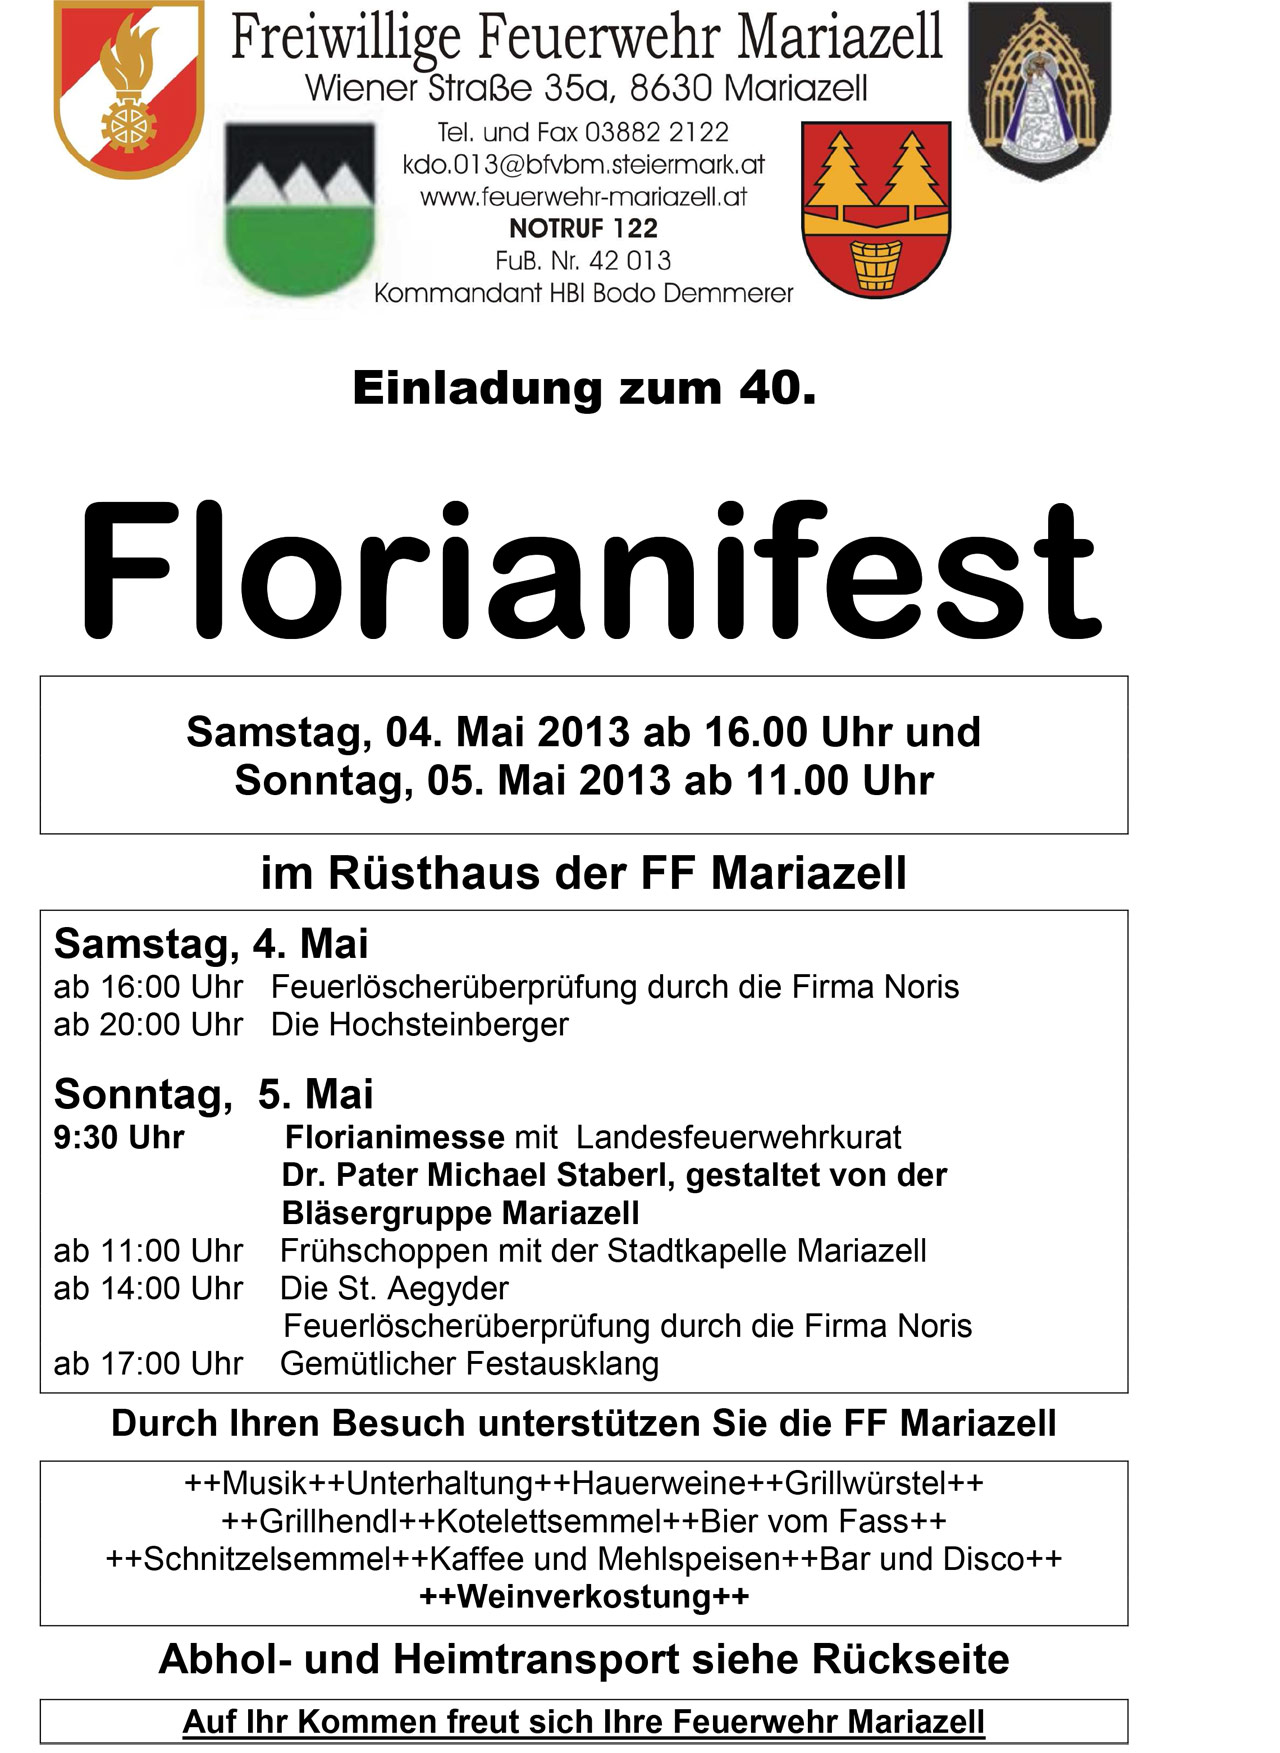 Einladung-Florianifest-2013 Mariazell